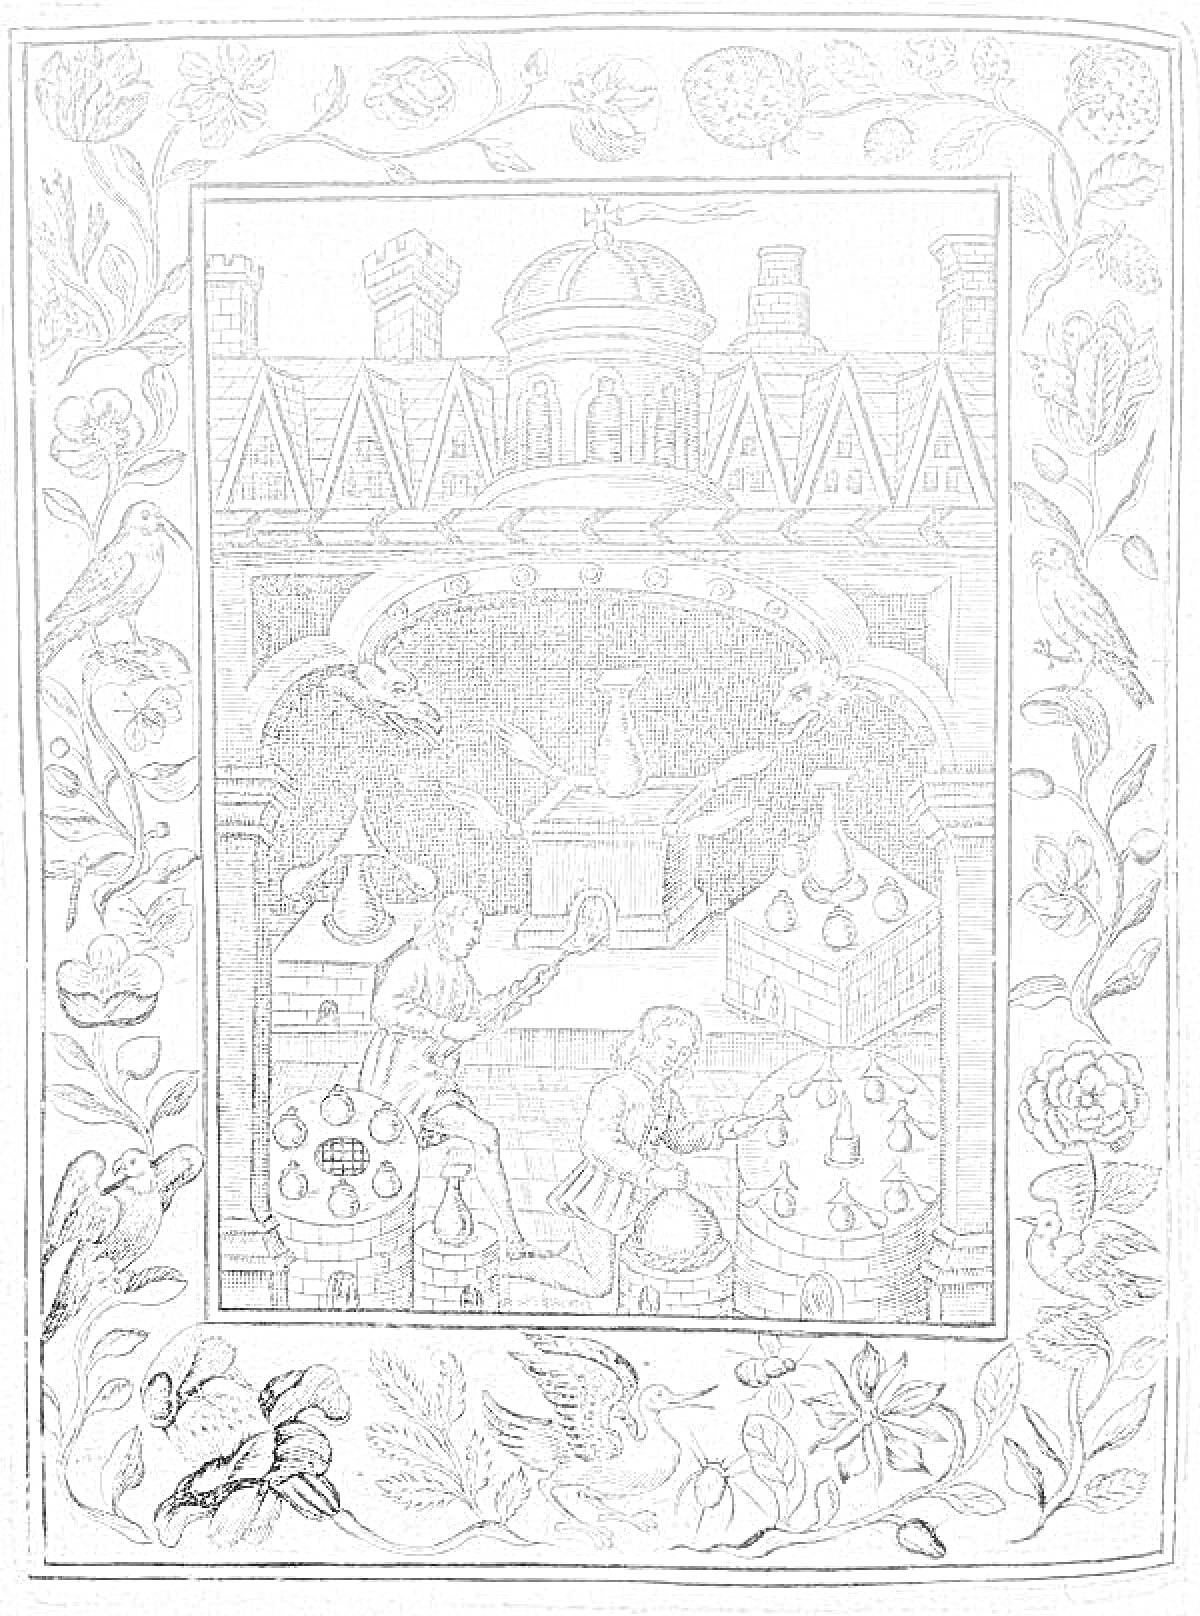 Кабинет алхимика в средневековом замке с изображением сокровищ, реторты и алхимических инструментов, окружённый рамкой с узором из цветов, птиц и листьев.